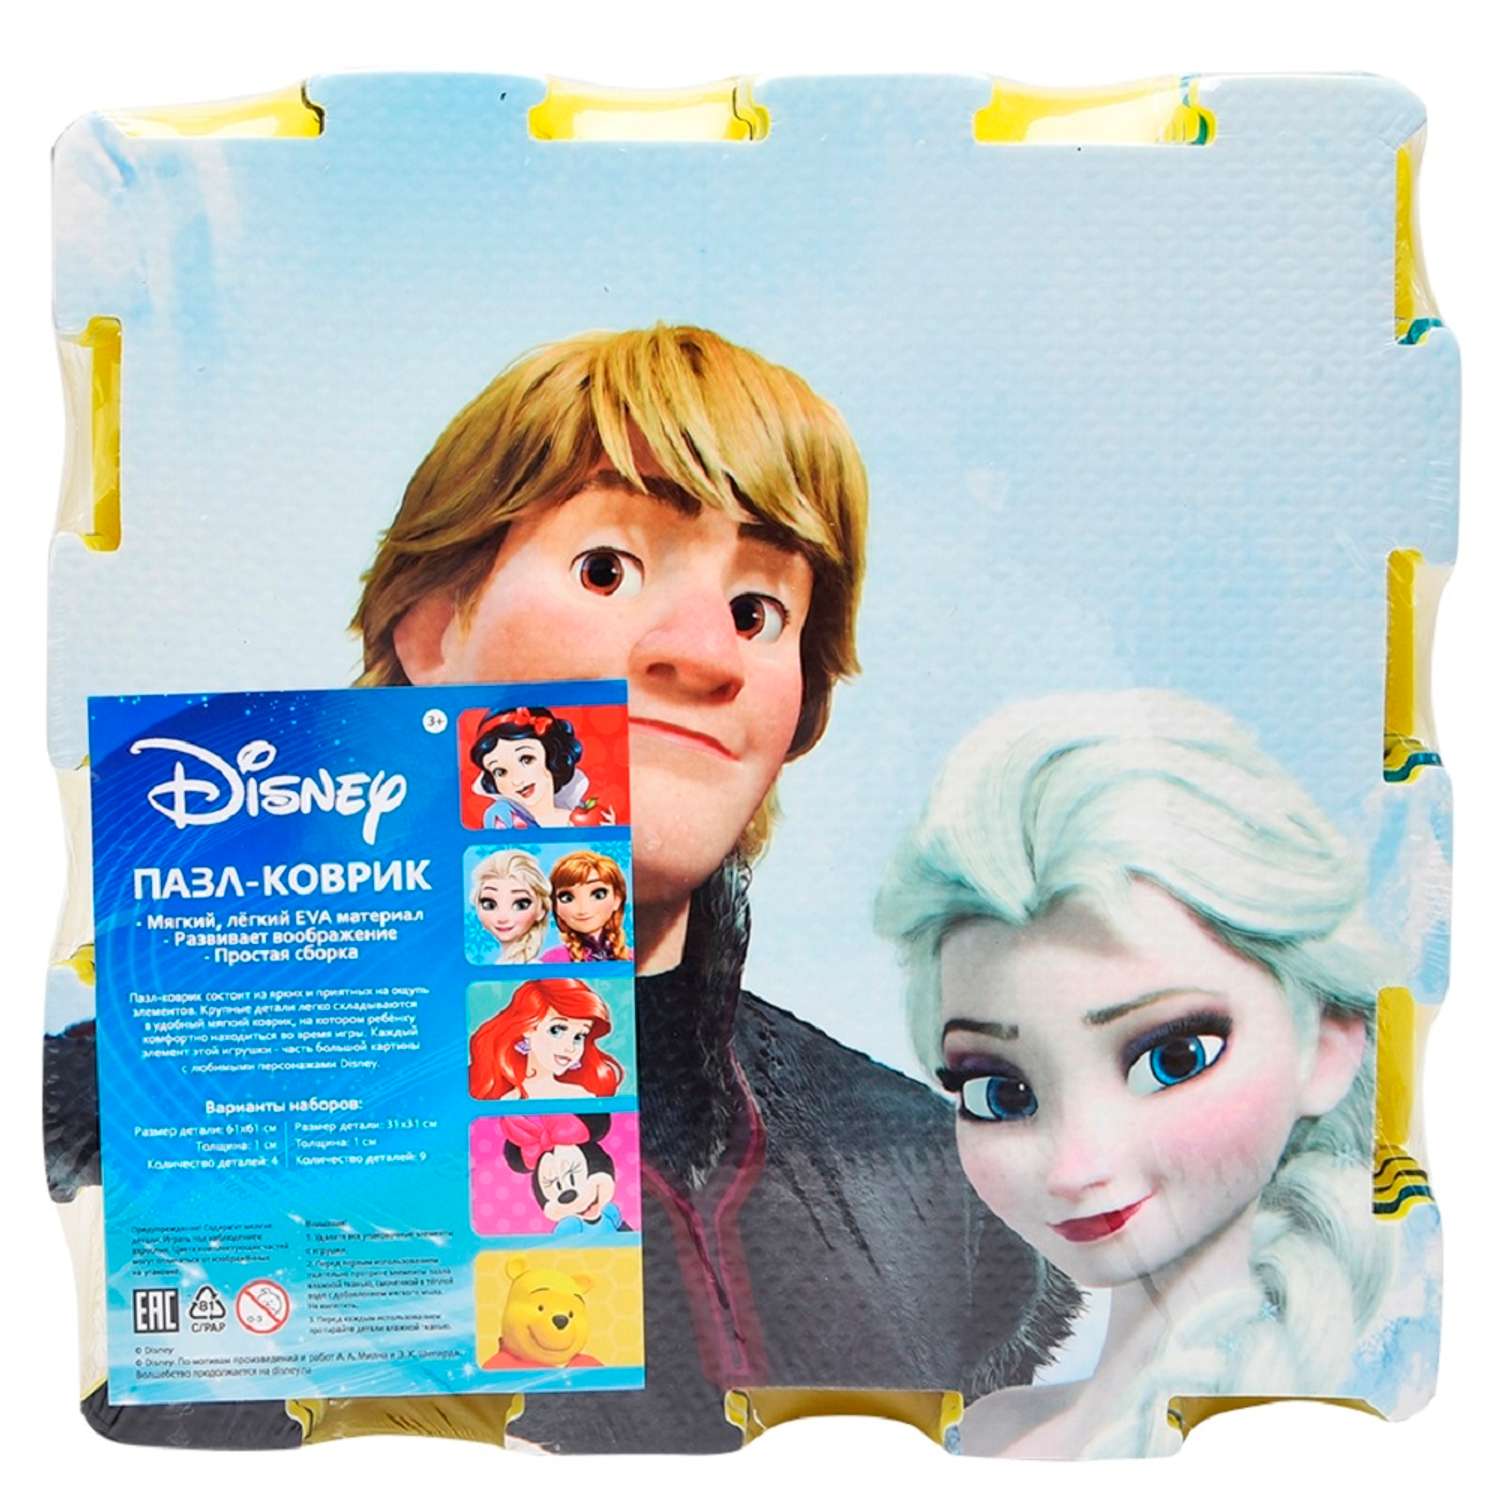 Пазл-коврик Disney Холодное сердце - фото 2